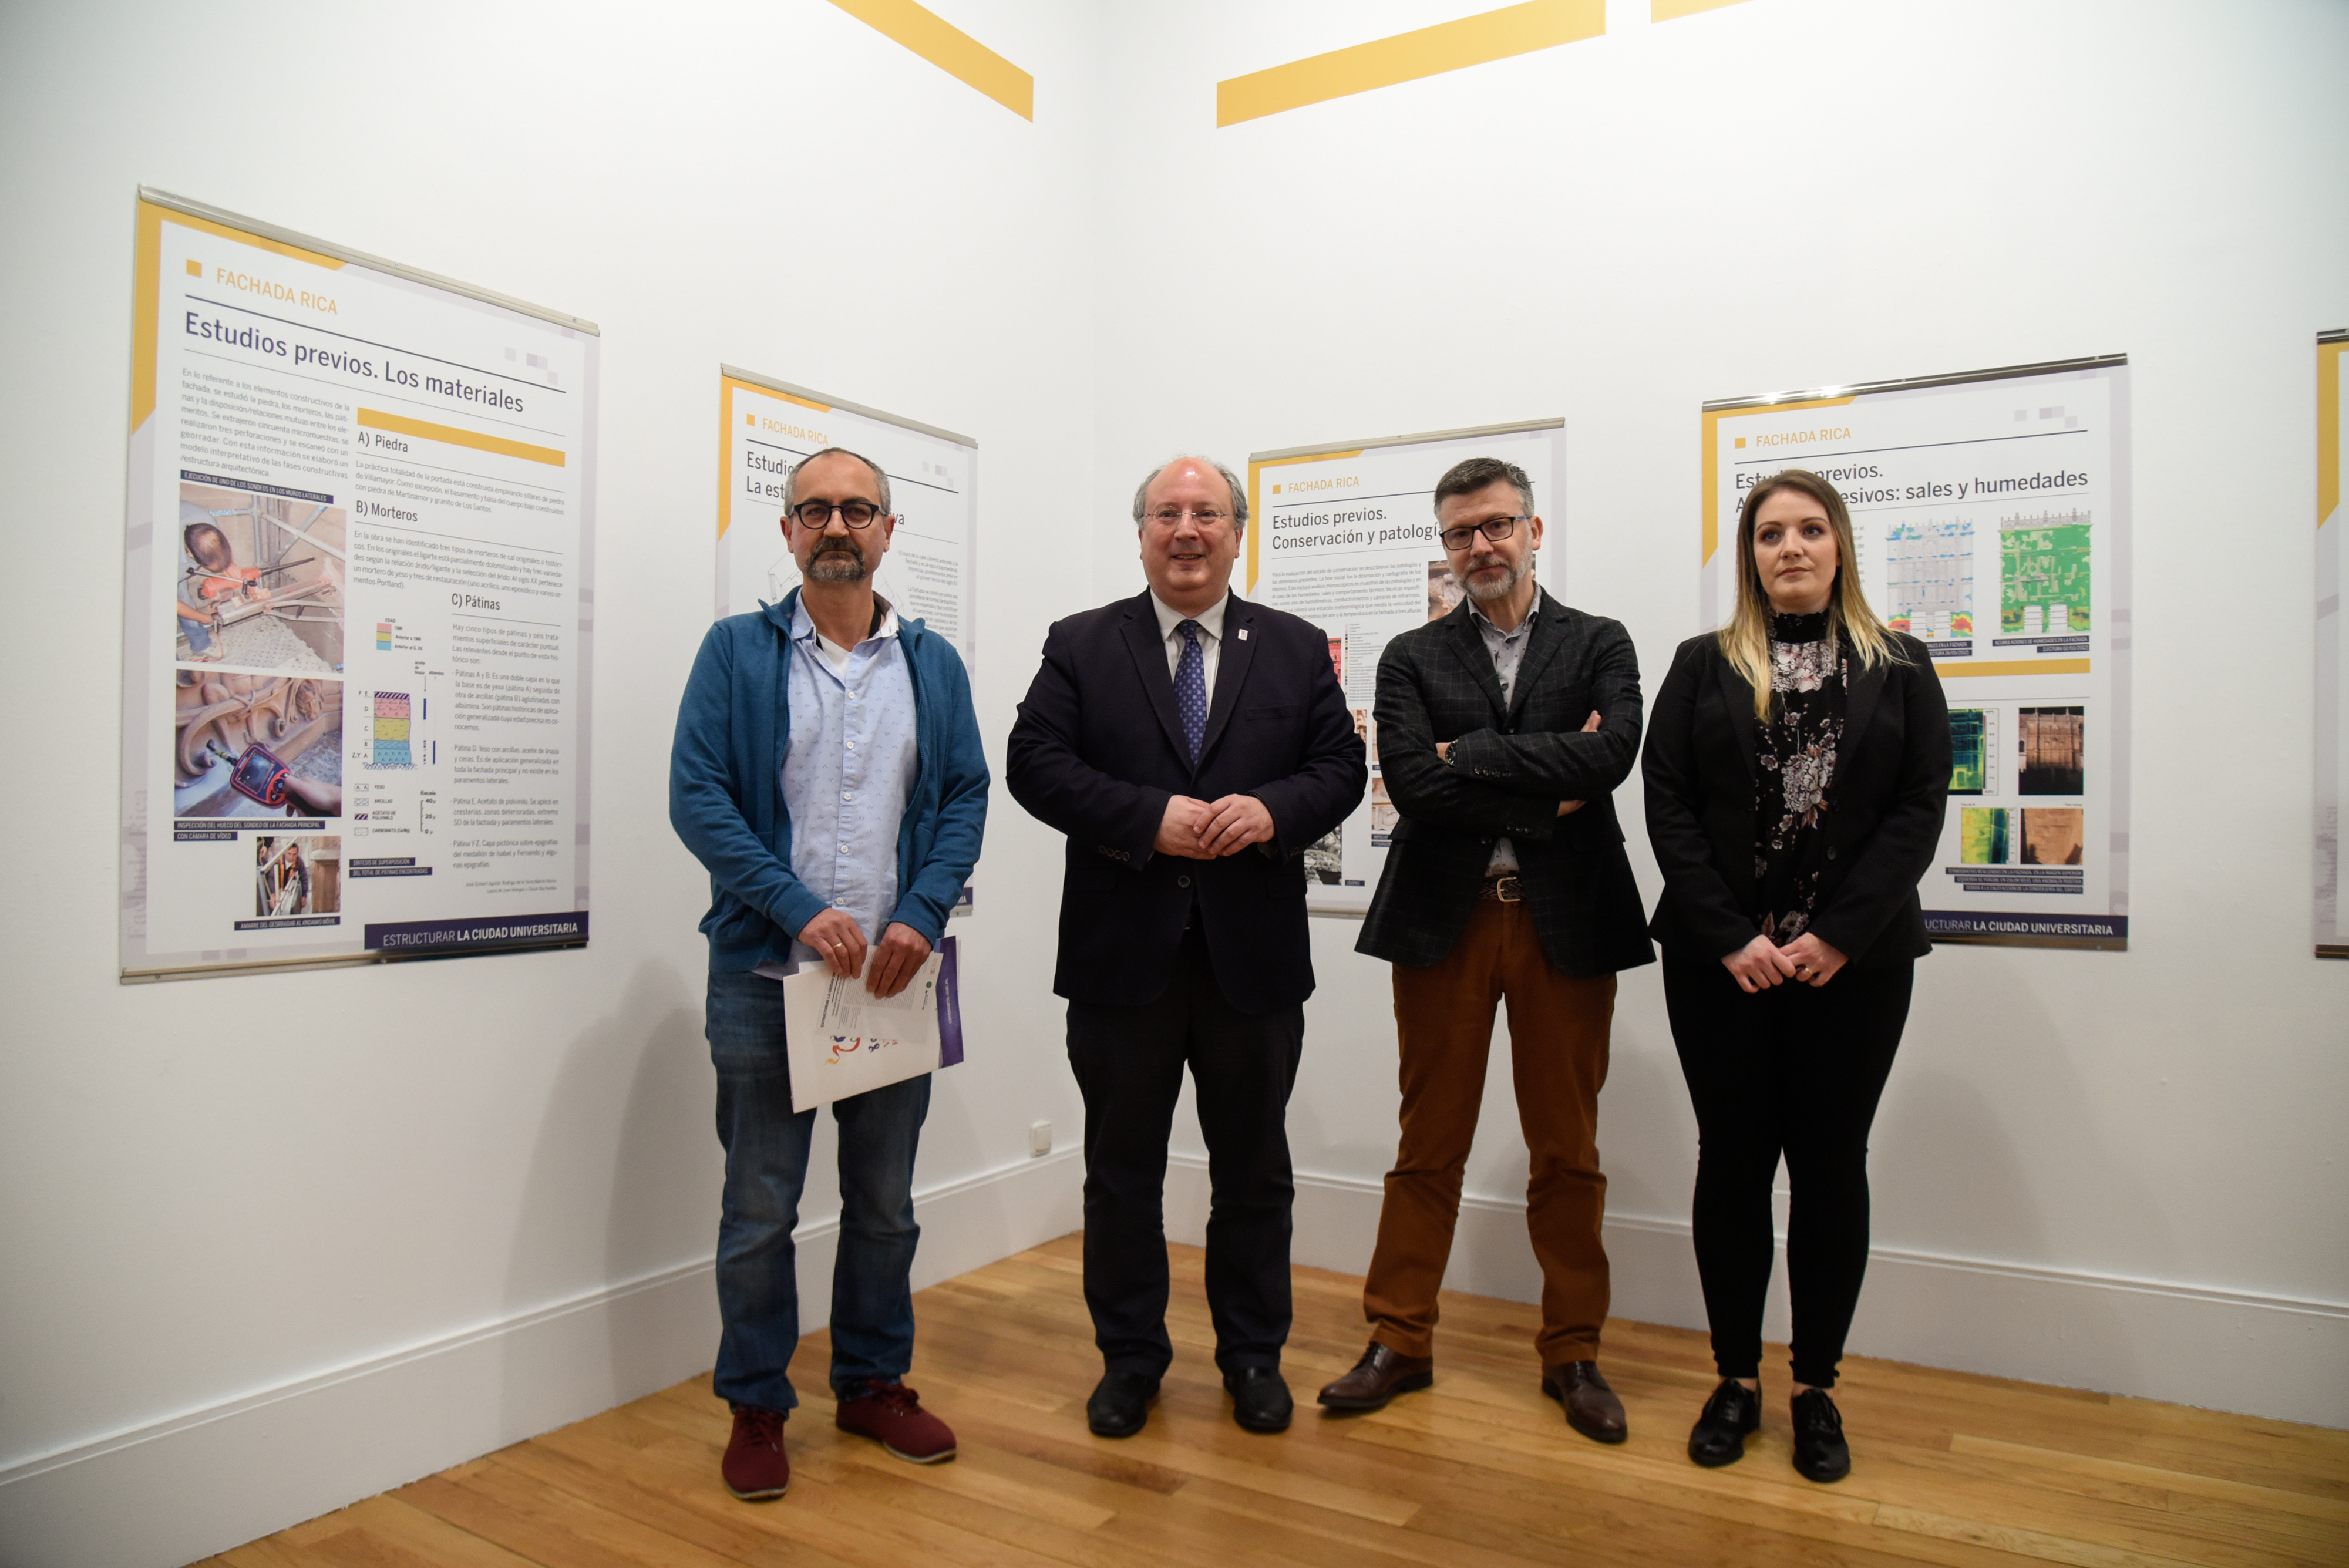 La exposición ‘Estructurar la ciudad universitaria’ propone un recorrido visual y didáctico por el patrimonio arquitectónico de la Universidad de Salamanca